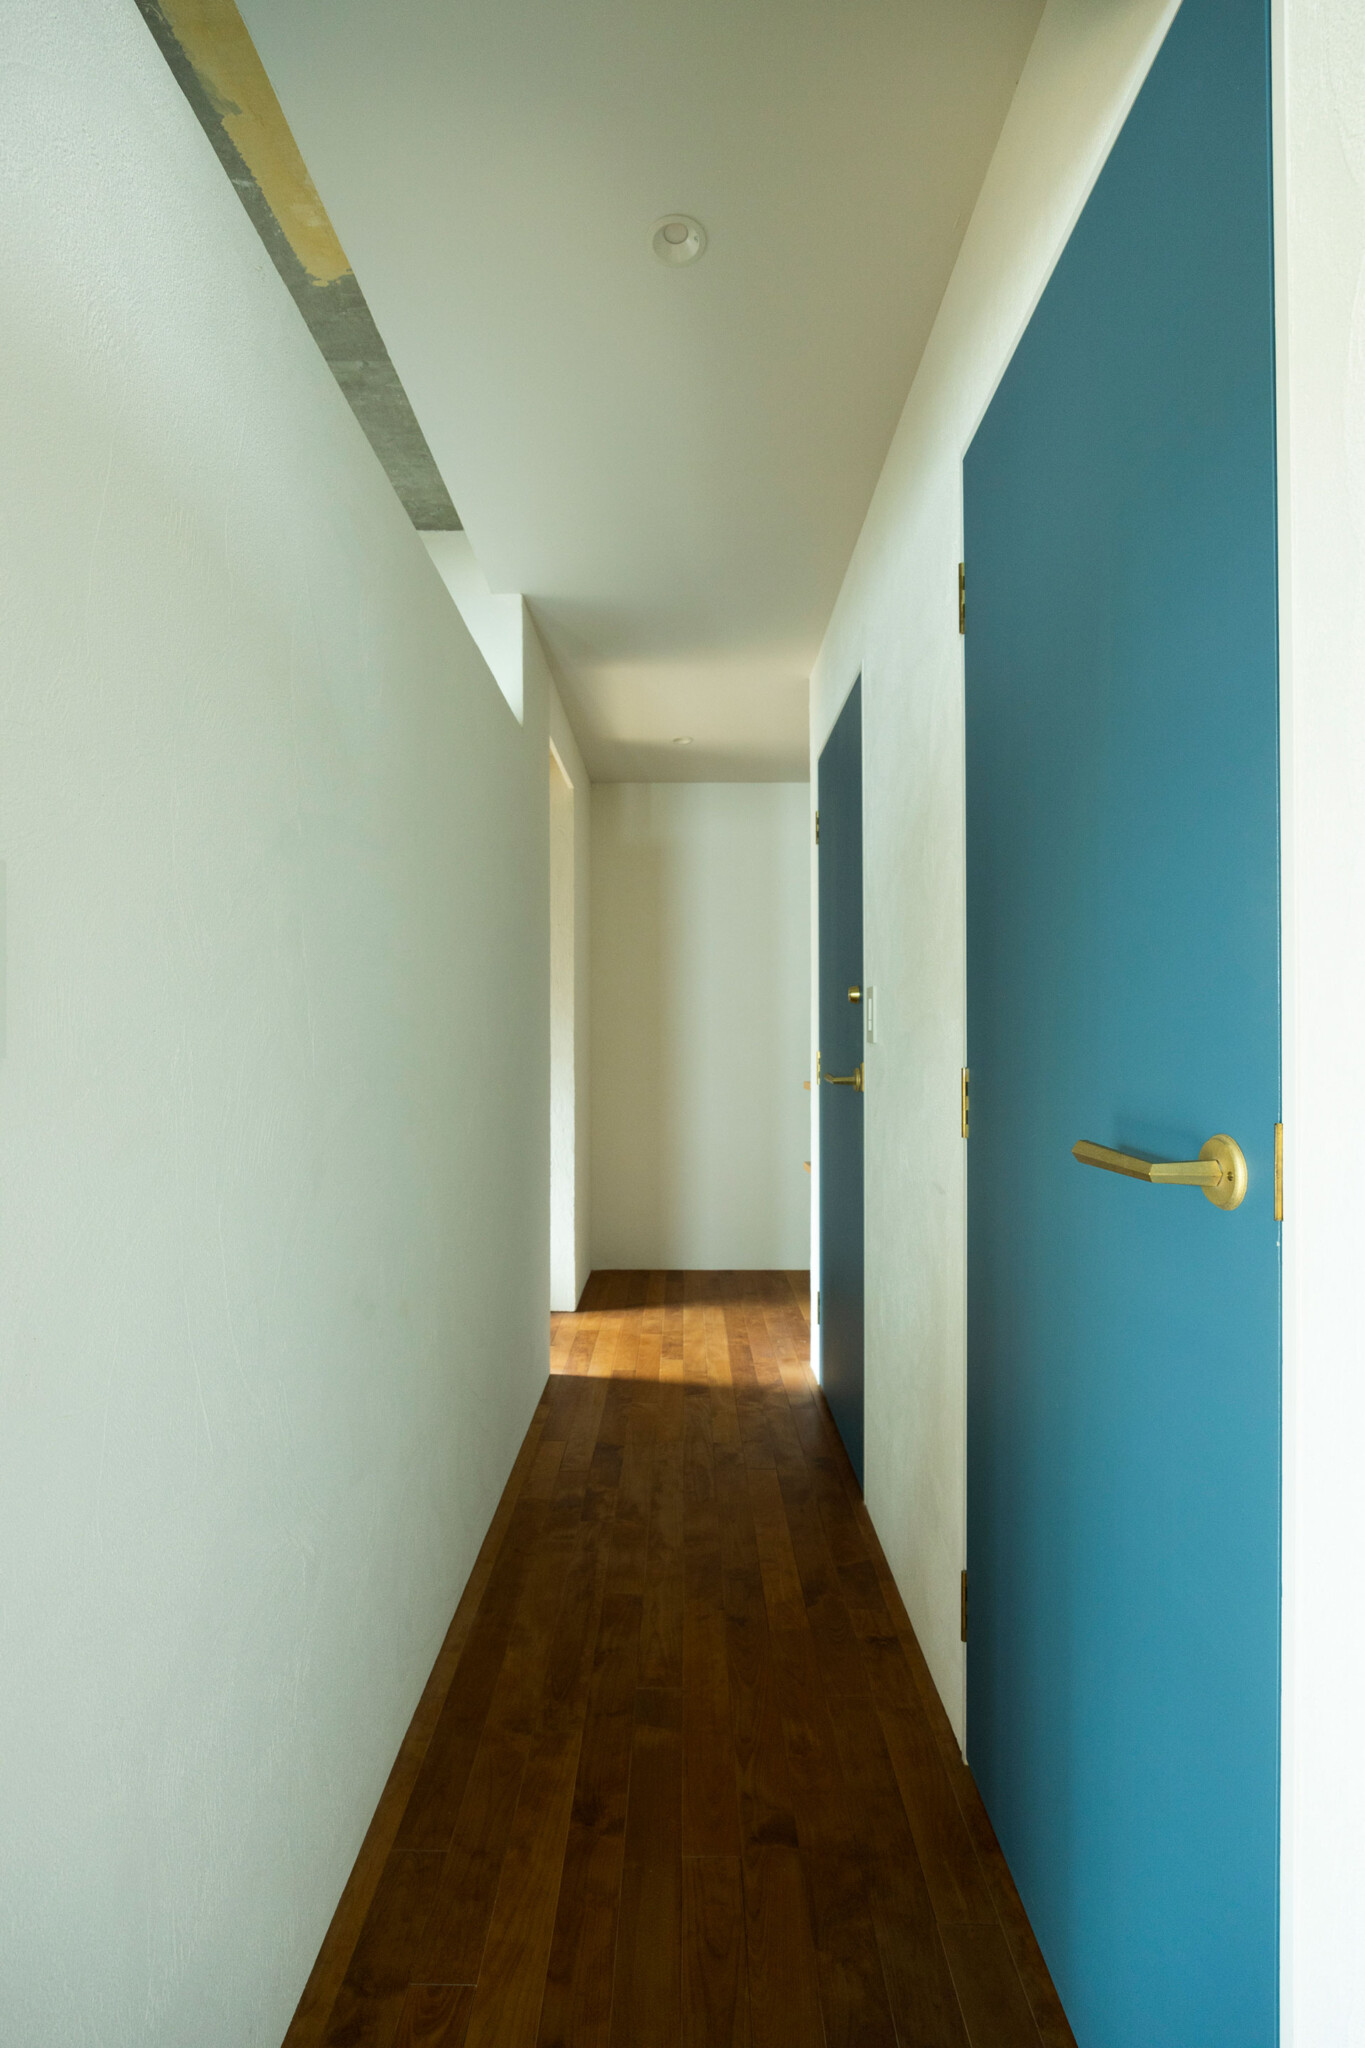 表情のある珪藻土の壁に、ブルーグレーのドアがアクセントに。